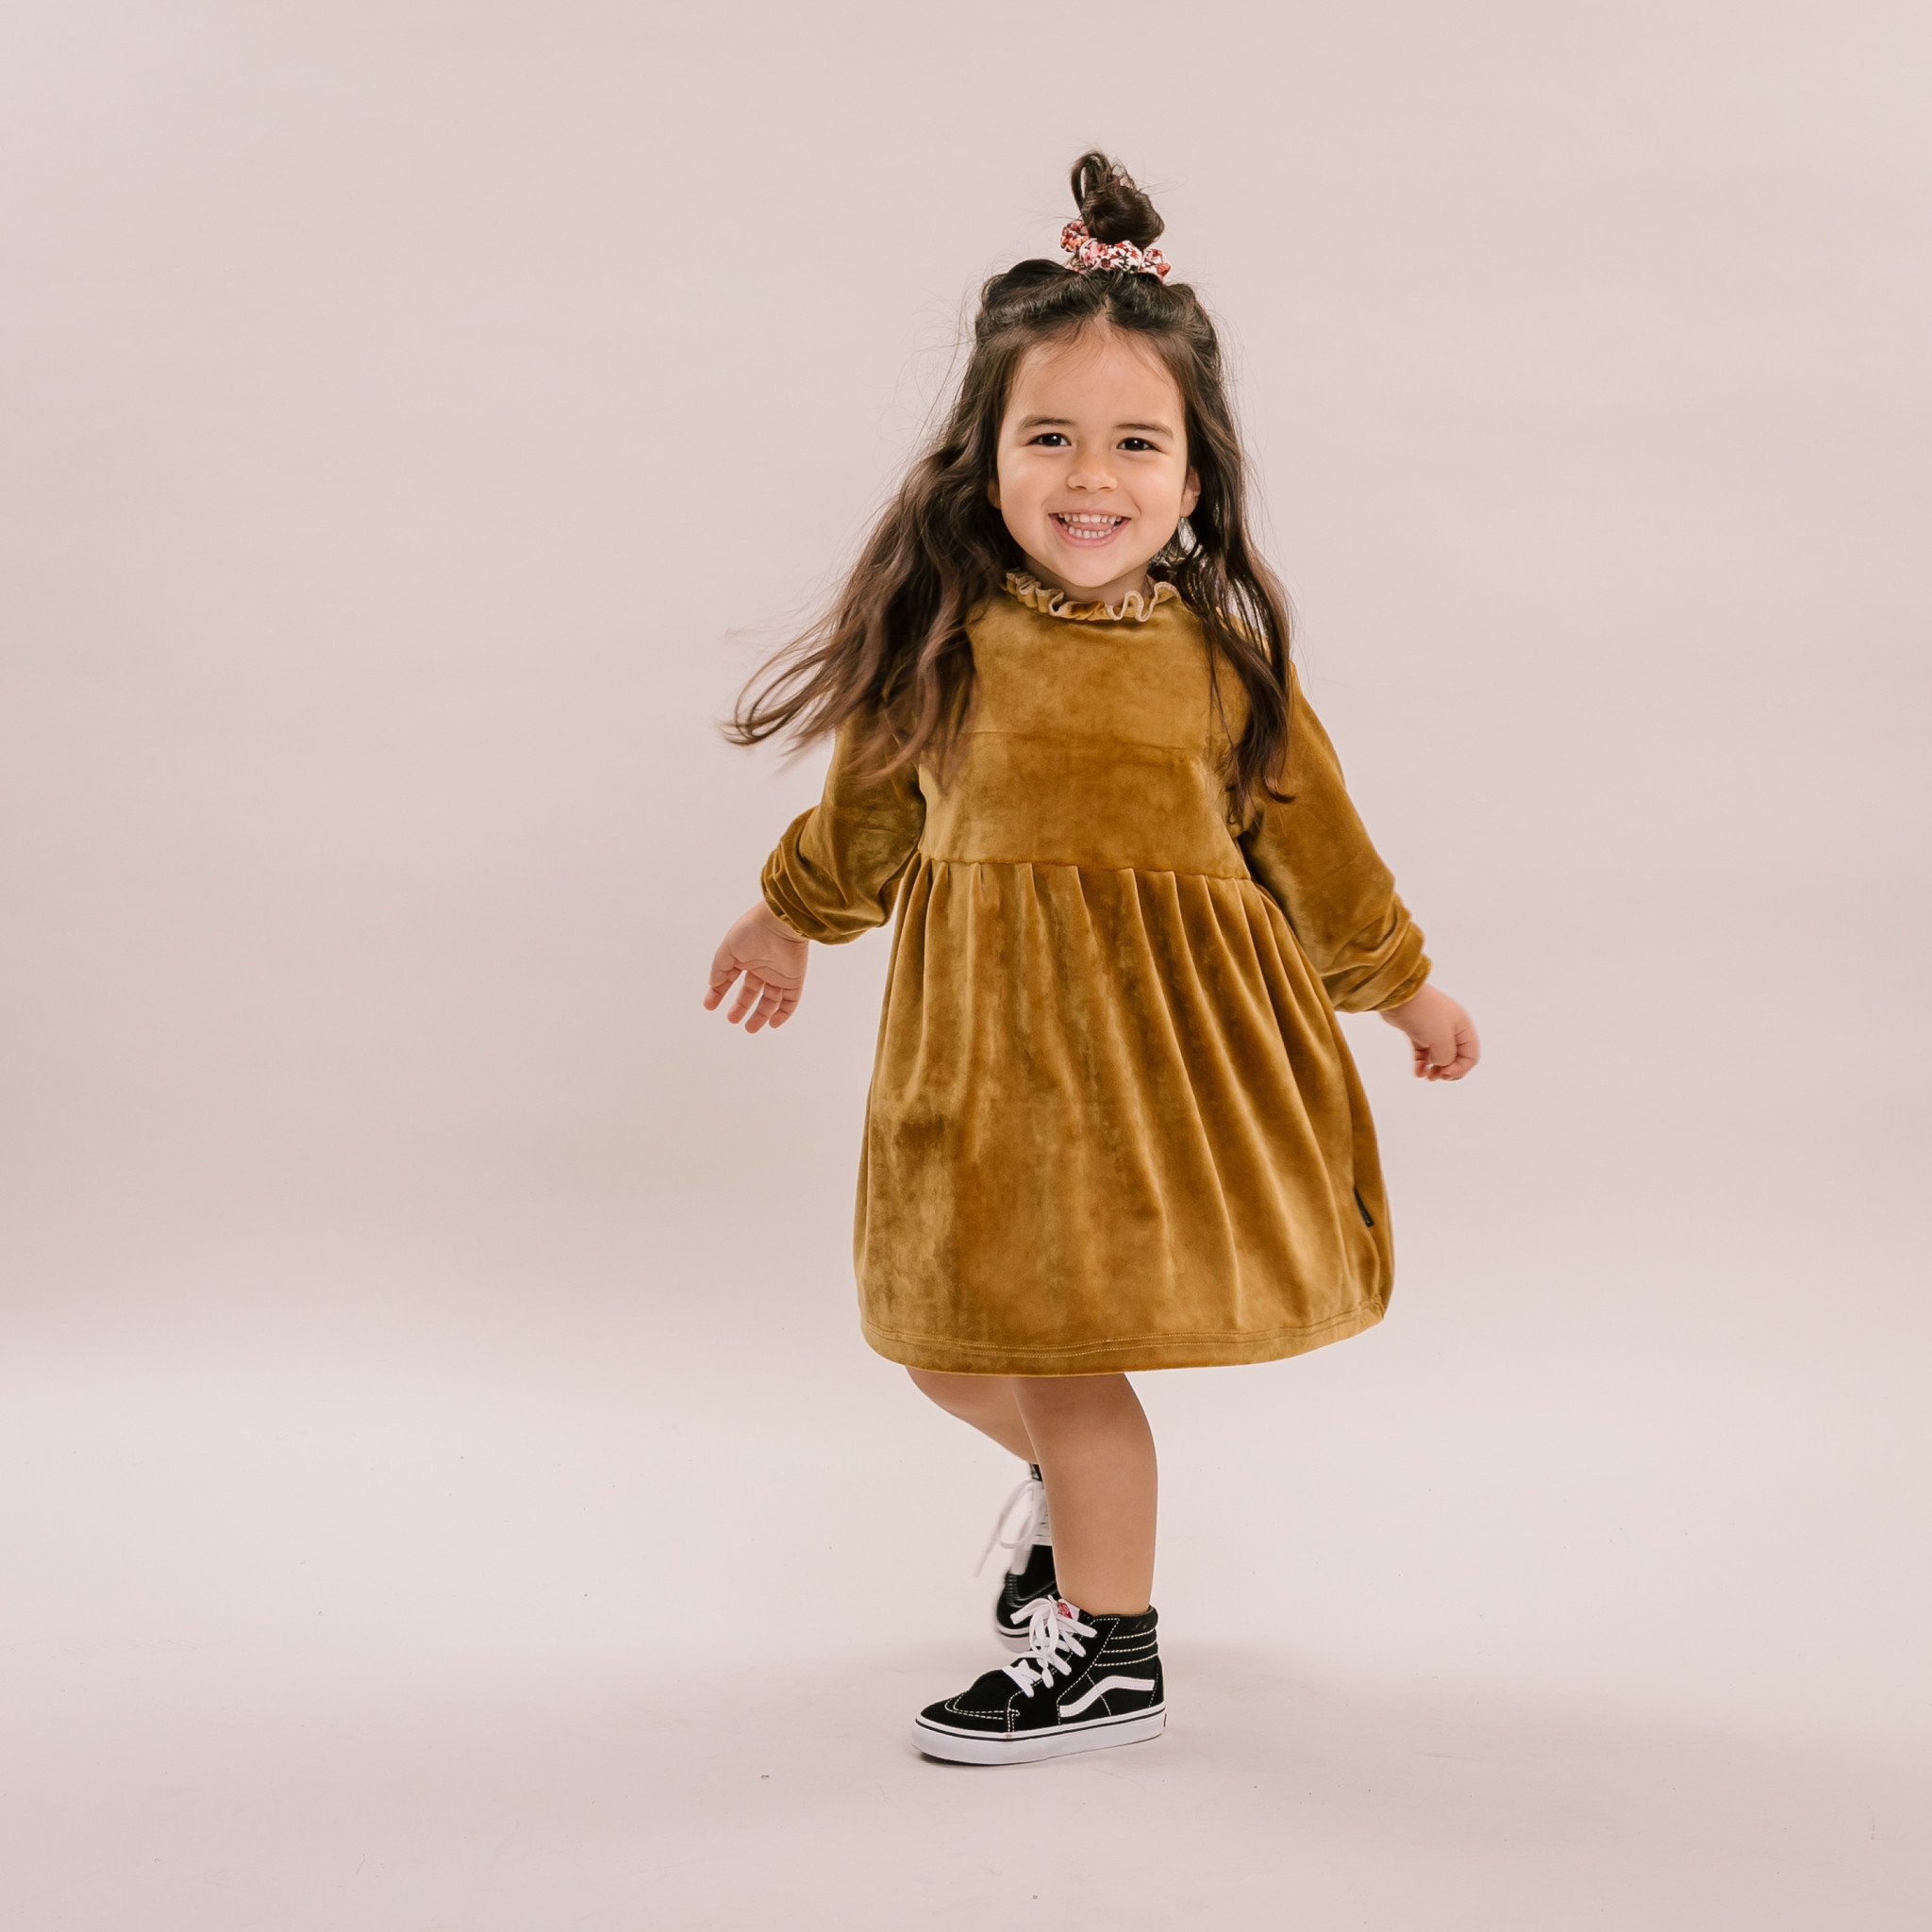 Interessant seinpaal spontaan Dress Velvet Gold - Kids Distrikt - mooie, frisse, comfortabele en  opvallende kleding voor kids in de leeftijd van 0-8 jaar ✌️